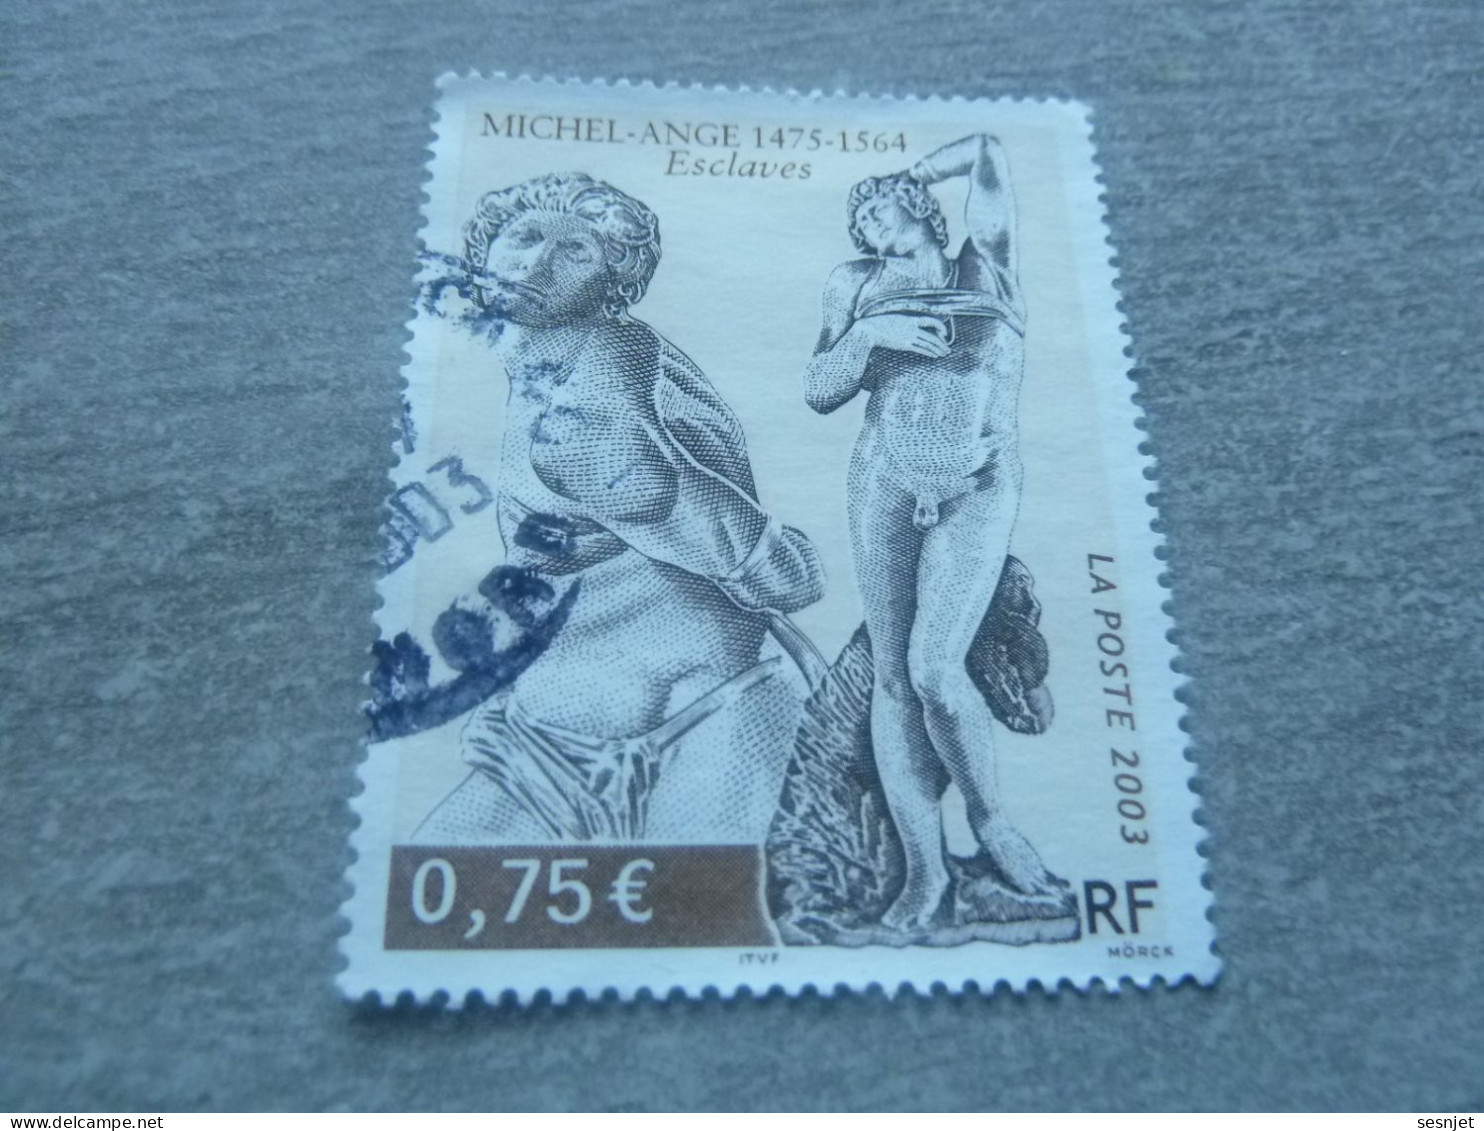 Michel-Ange (1475-1564) - Esclaves - 0.75 € - Yt 3558 - Multicolore - Oblitéré - Année 2003 - - Escultura